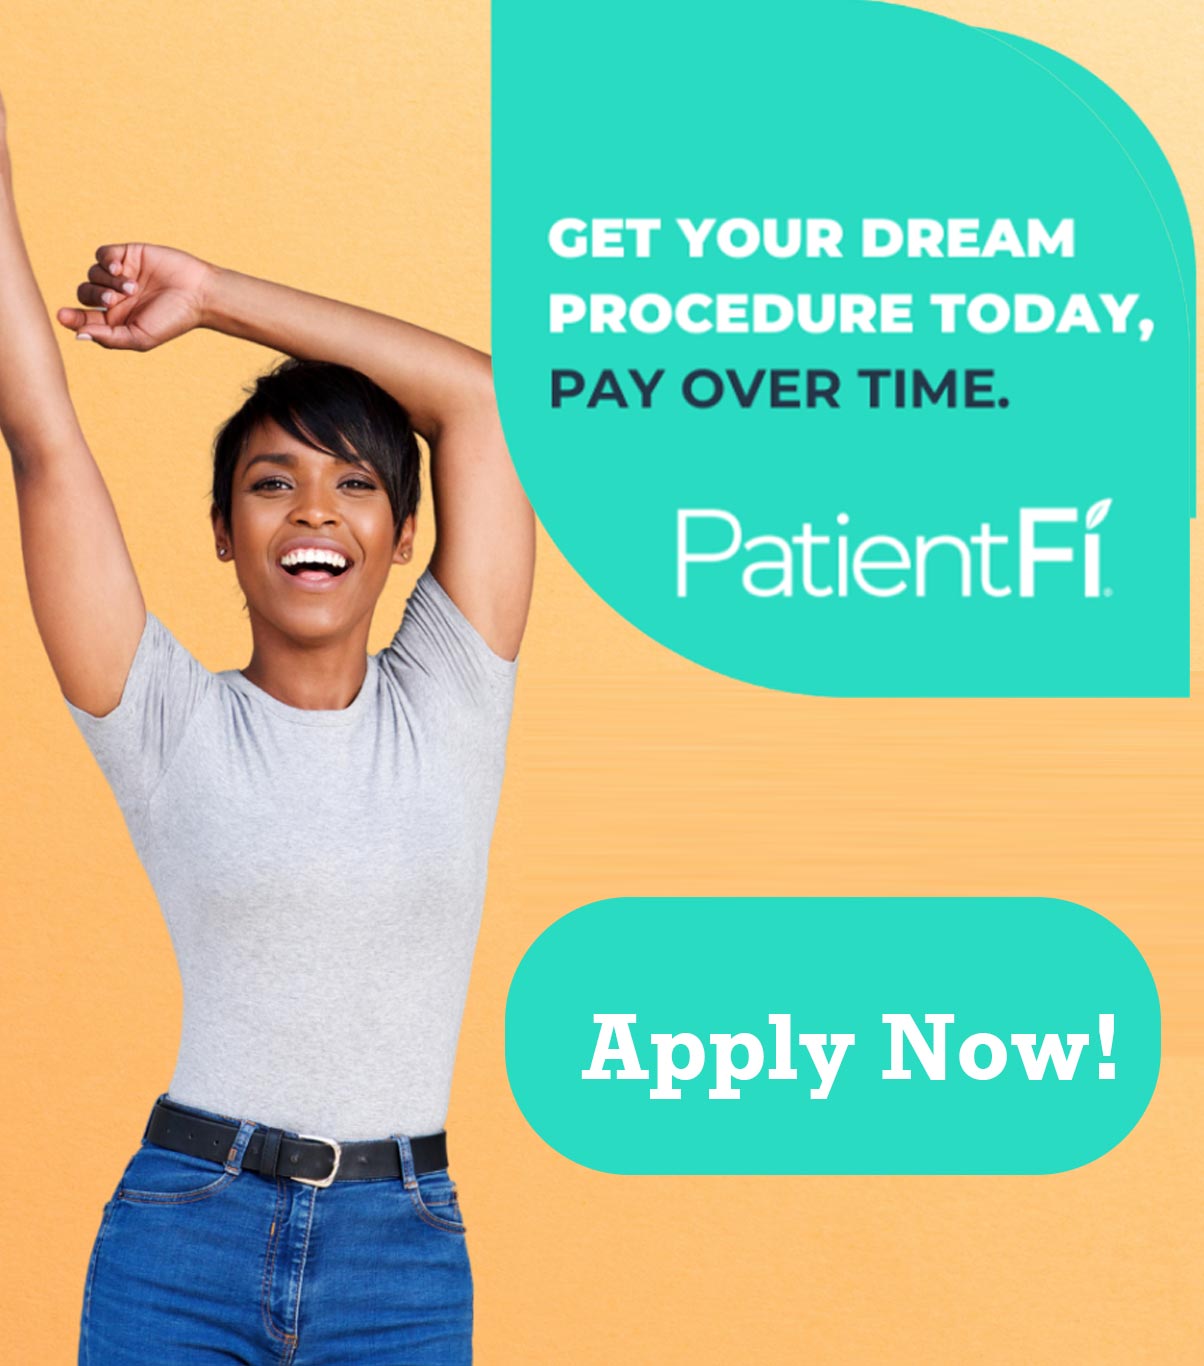 Patientfi - Apply Now